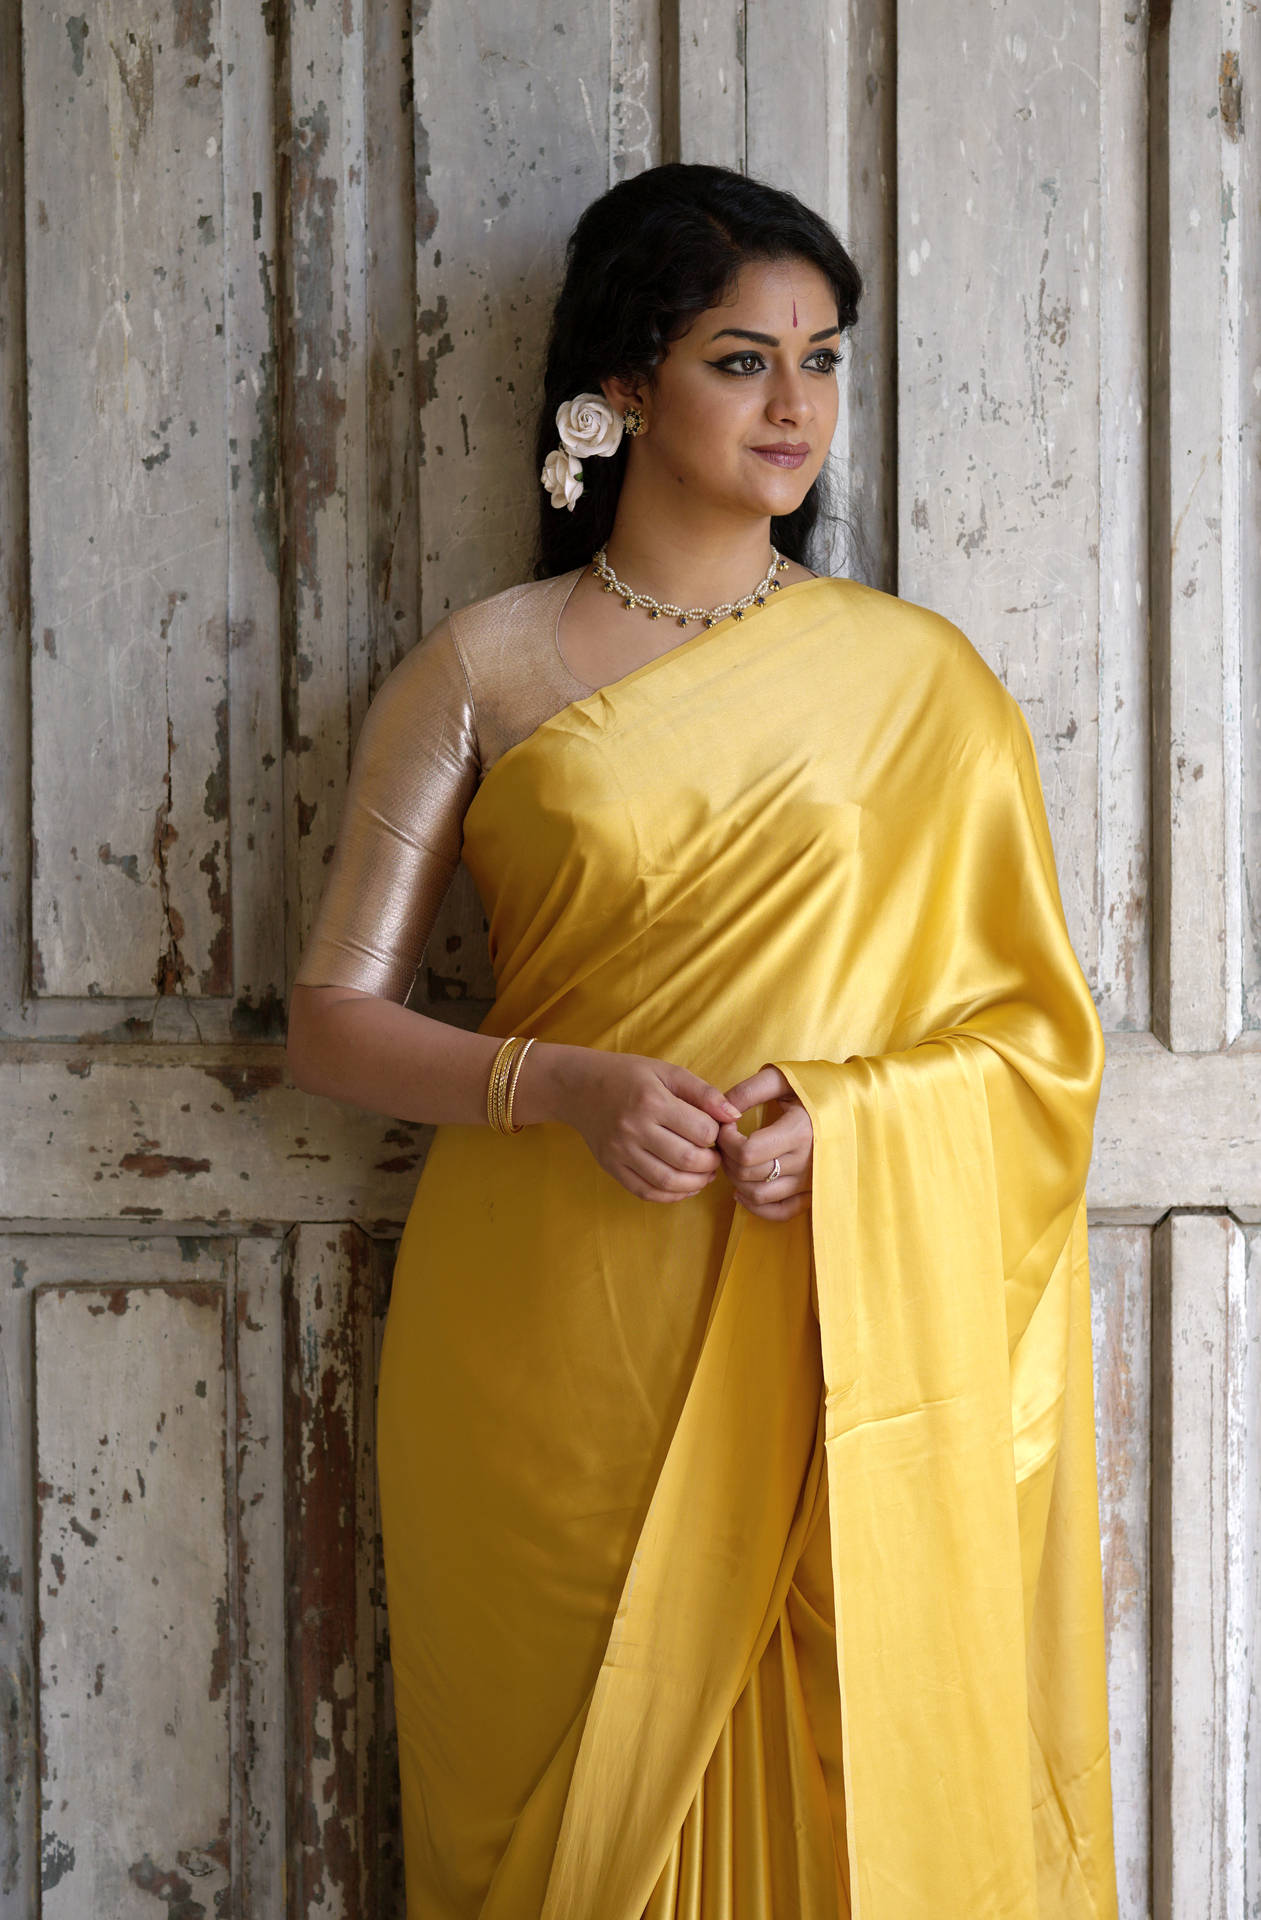 Keerthi Suresh Enchanting In A Golden Yellow Saree